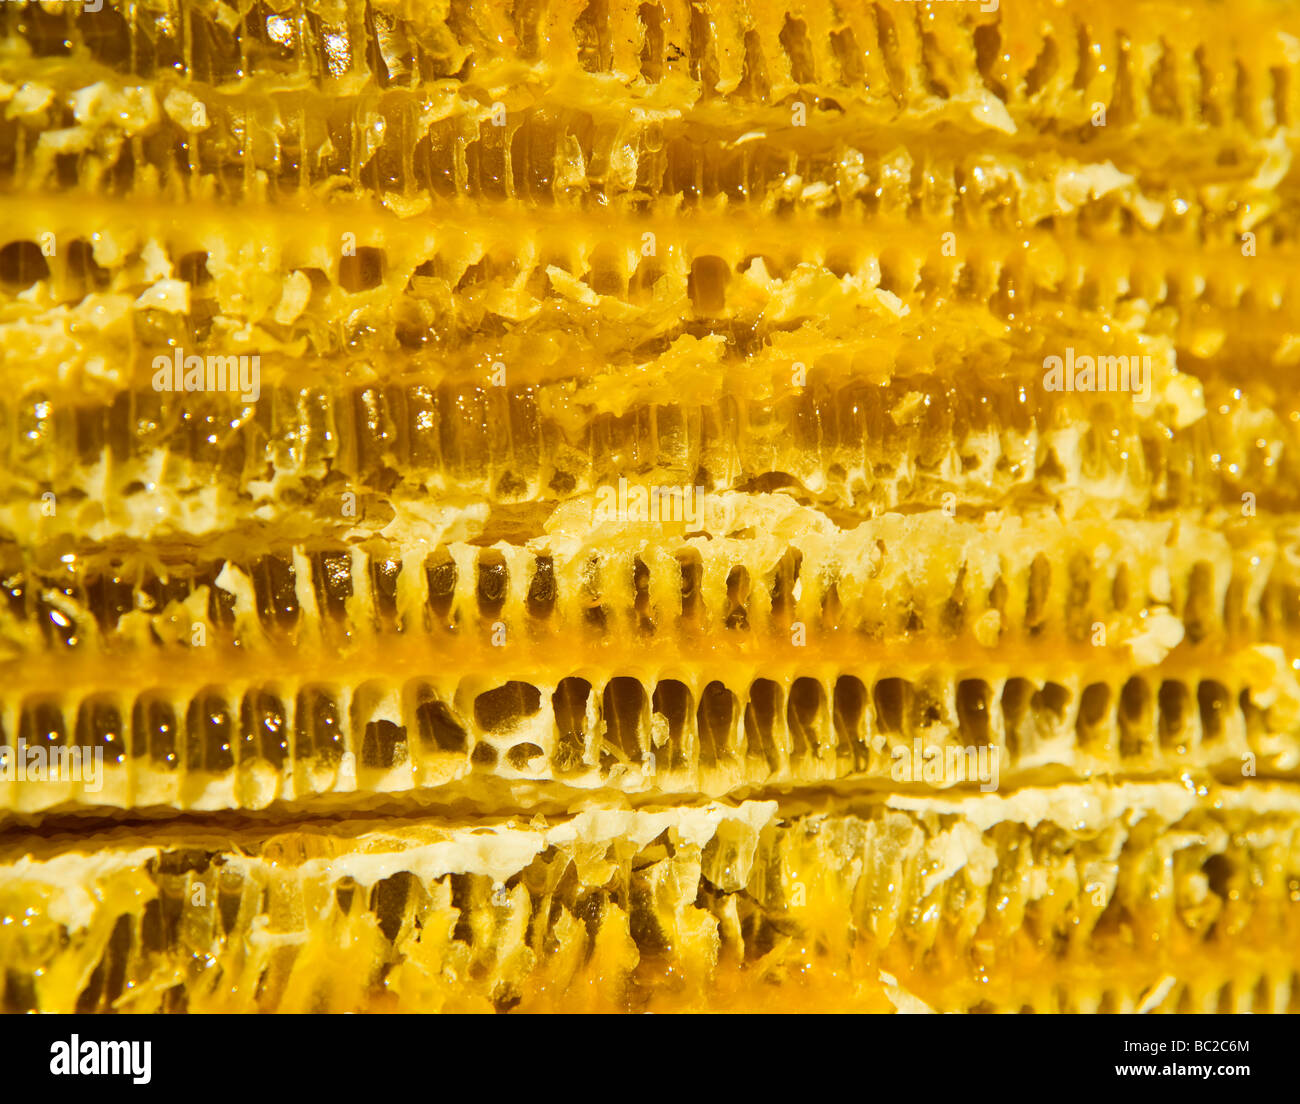 Honeycomb Stock Photo